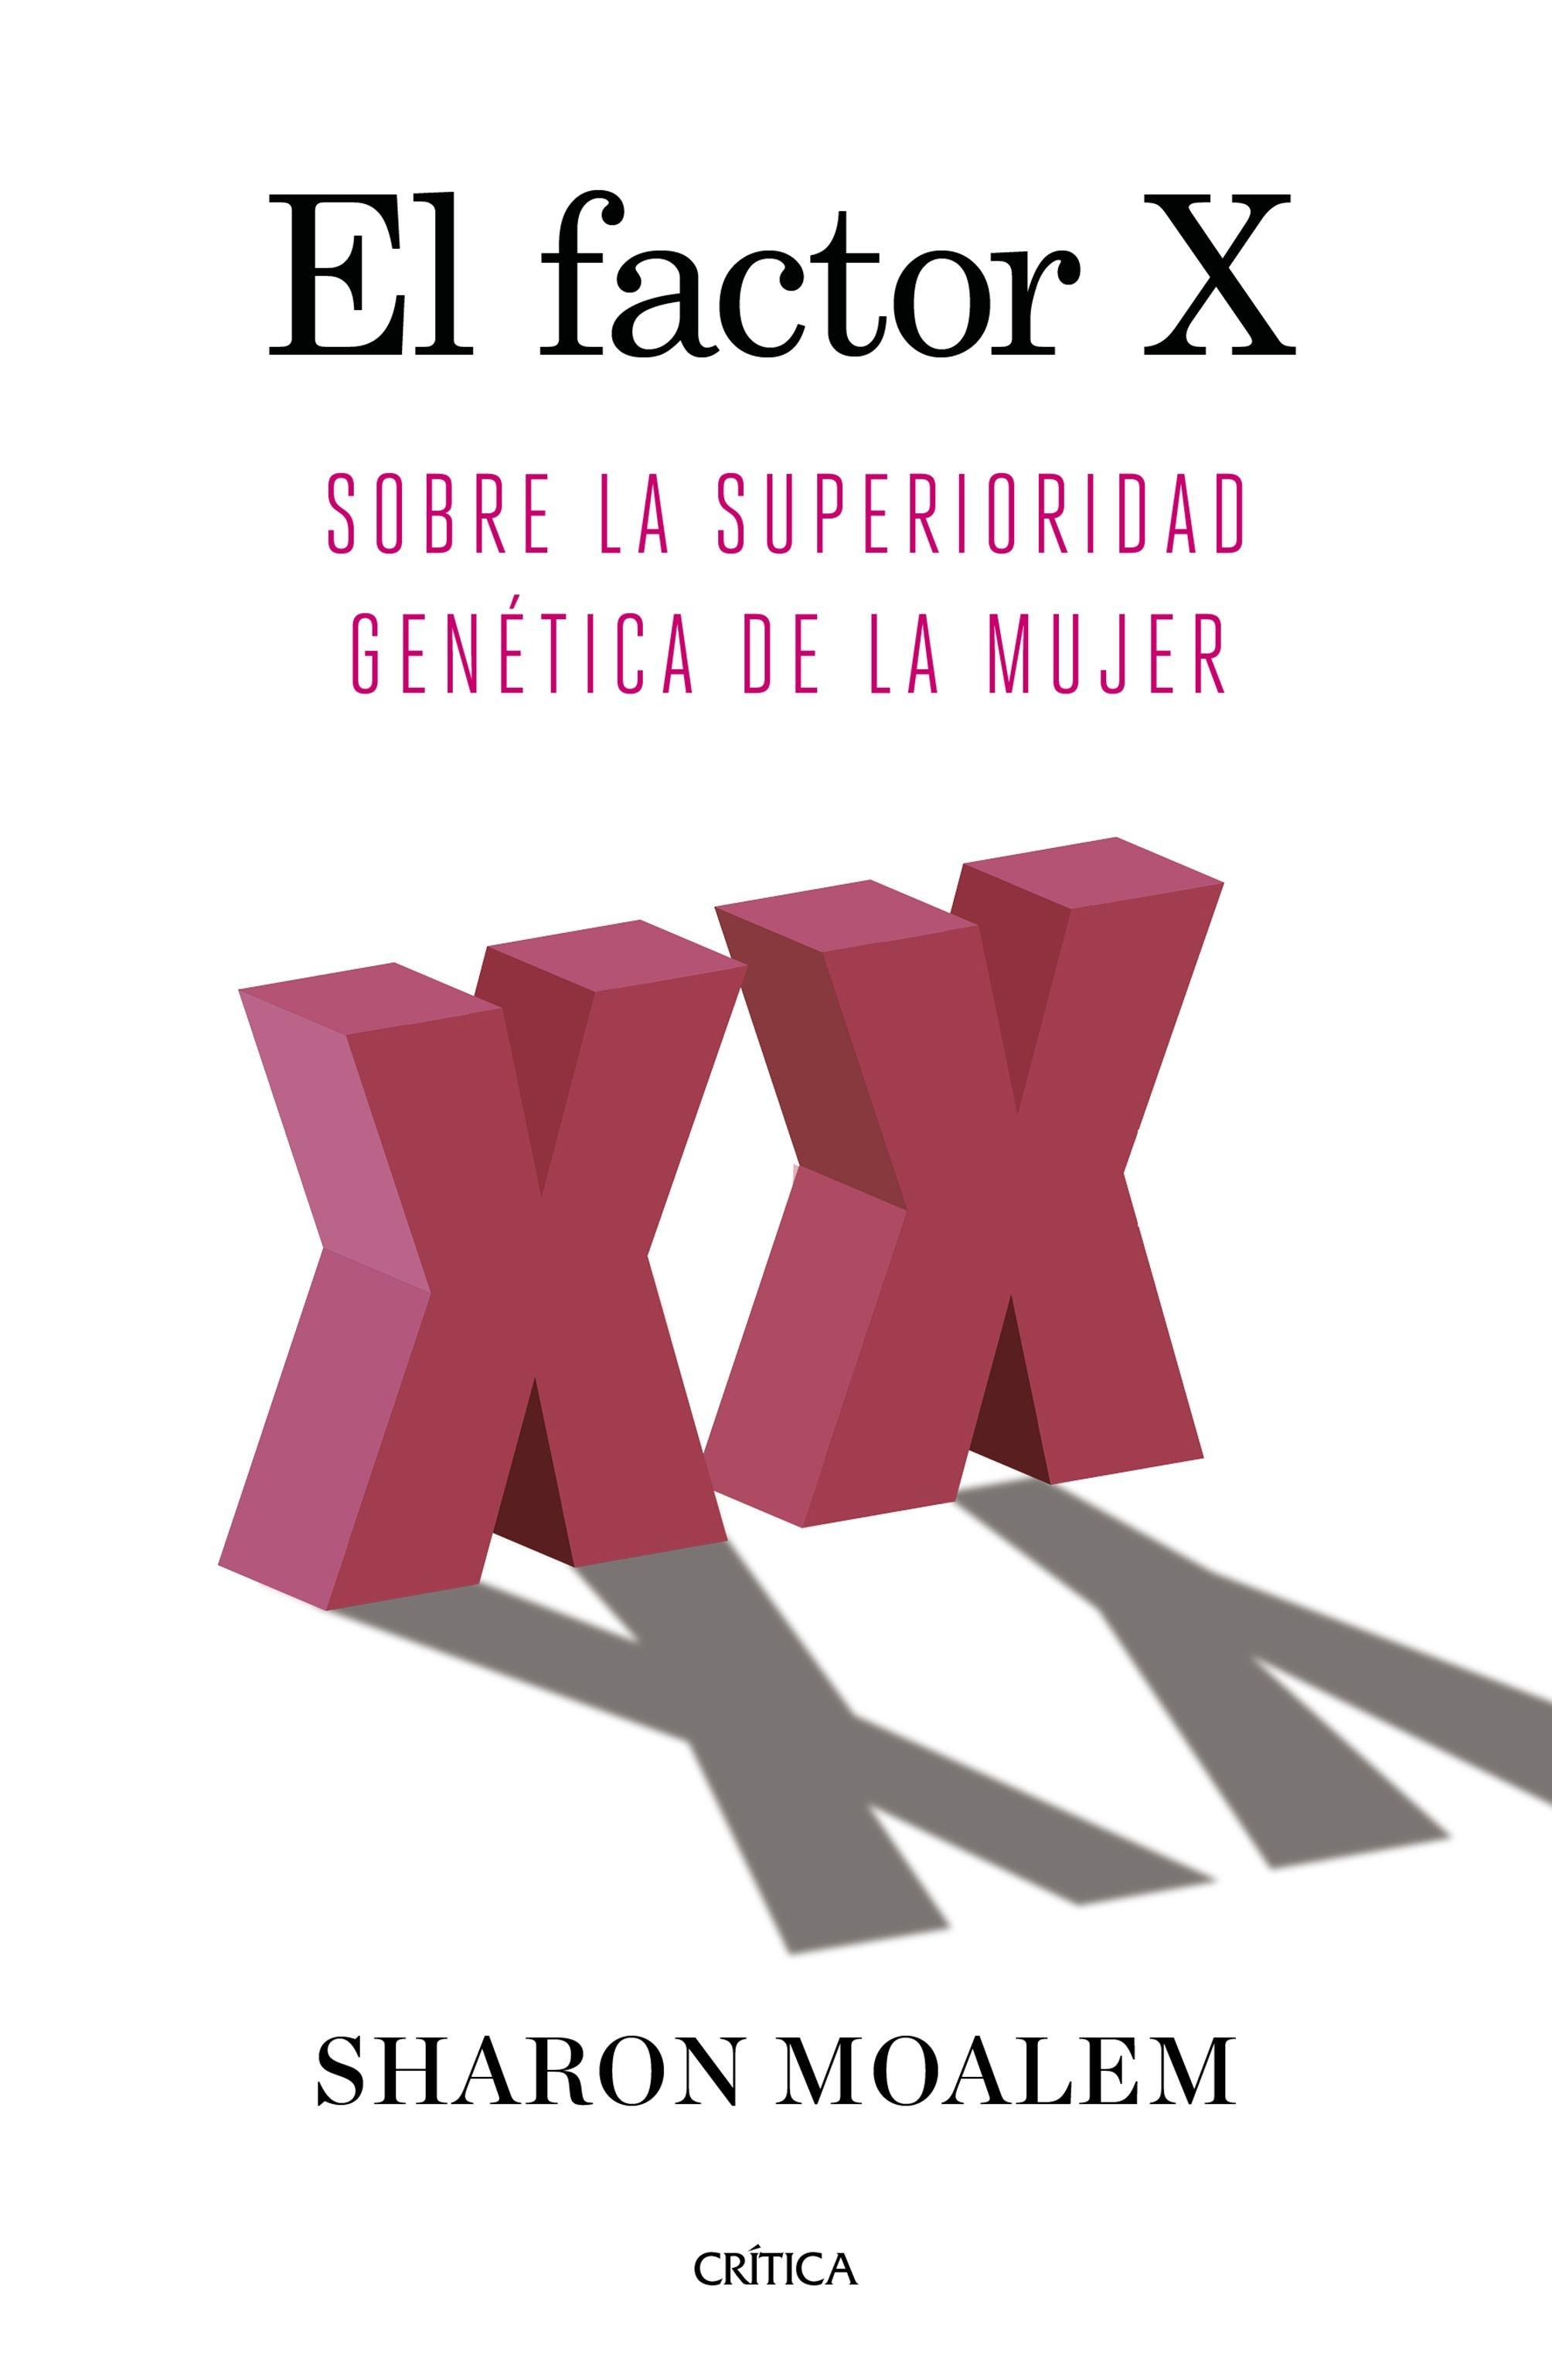 El Factor X "Sobre la Superioridad Genética de la Mujer"